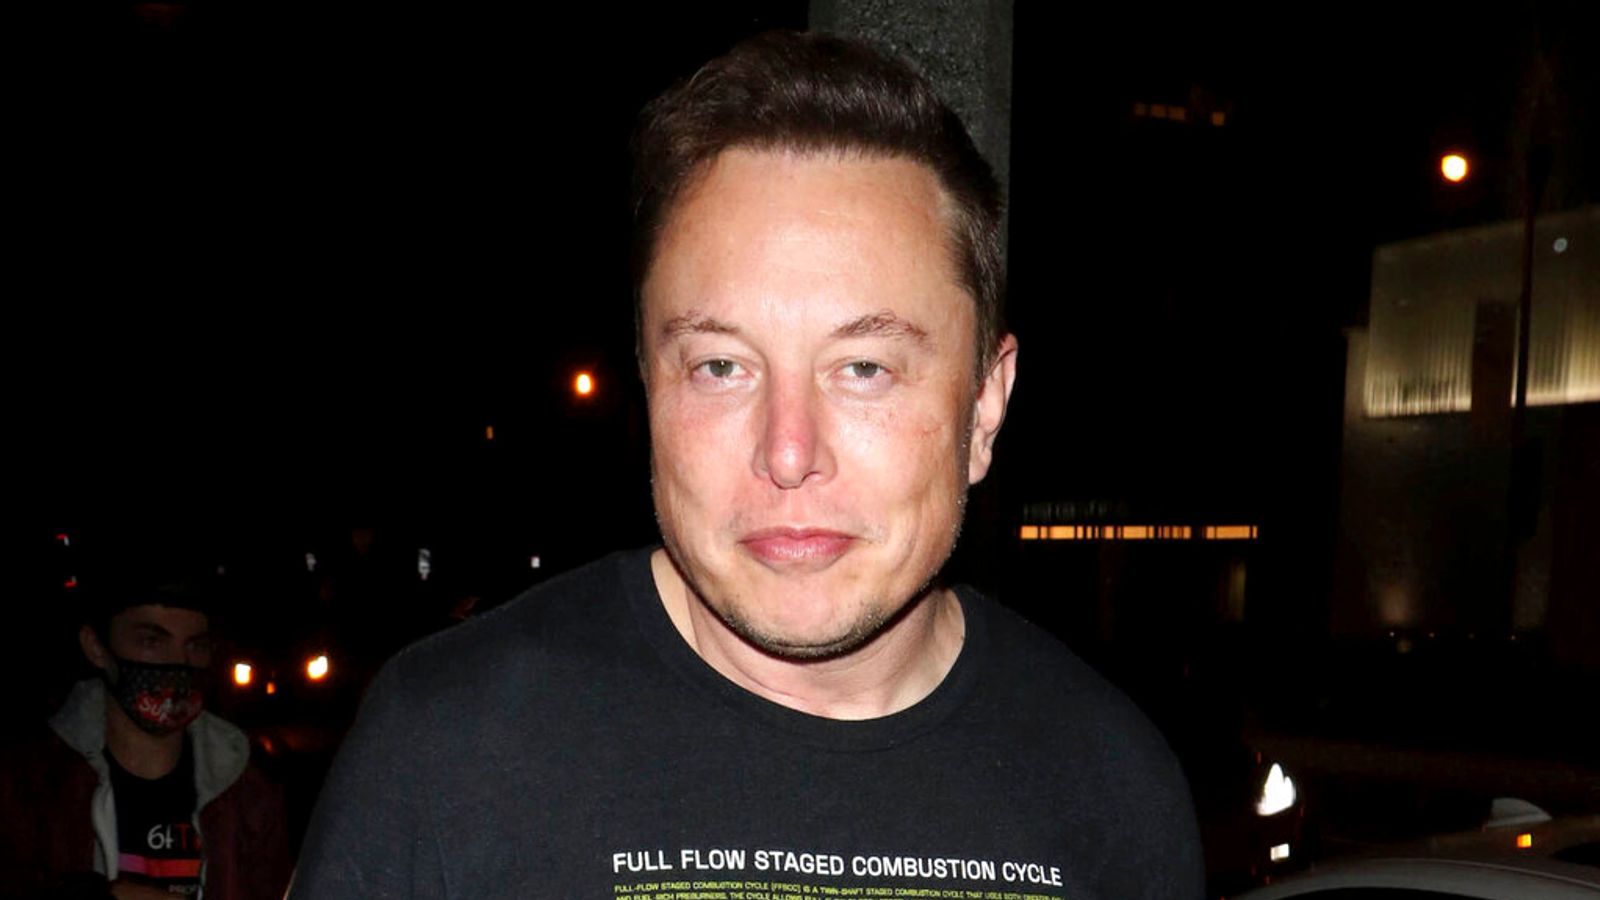 Elon Musk Is No Longer the World's Richest Person, Falls Behind Bernard  Arnault - WSJ